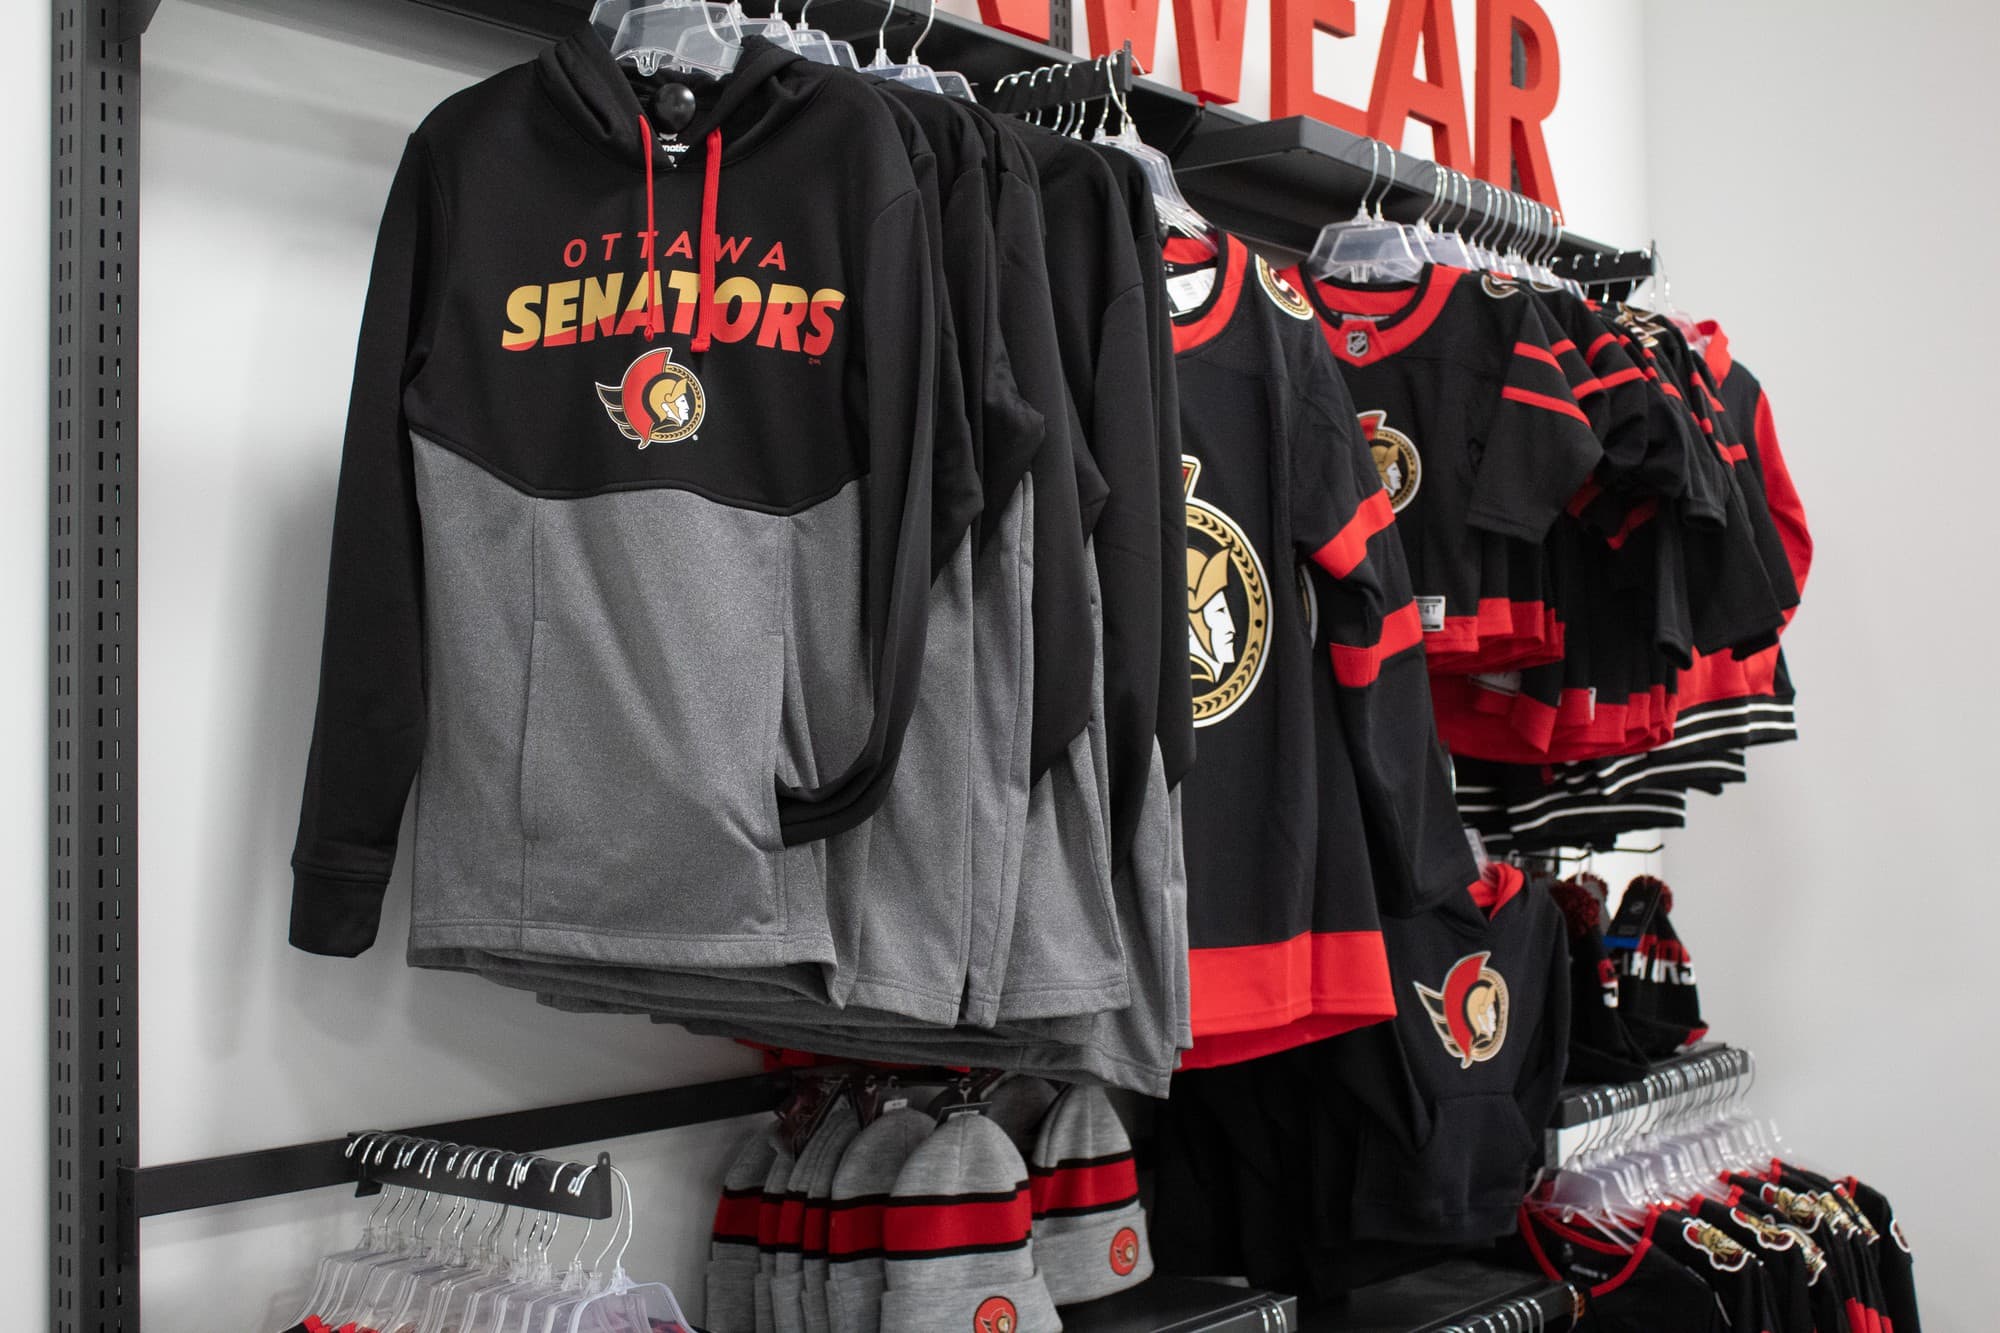 Ottawa Senators apparel is popular with fans.